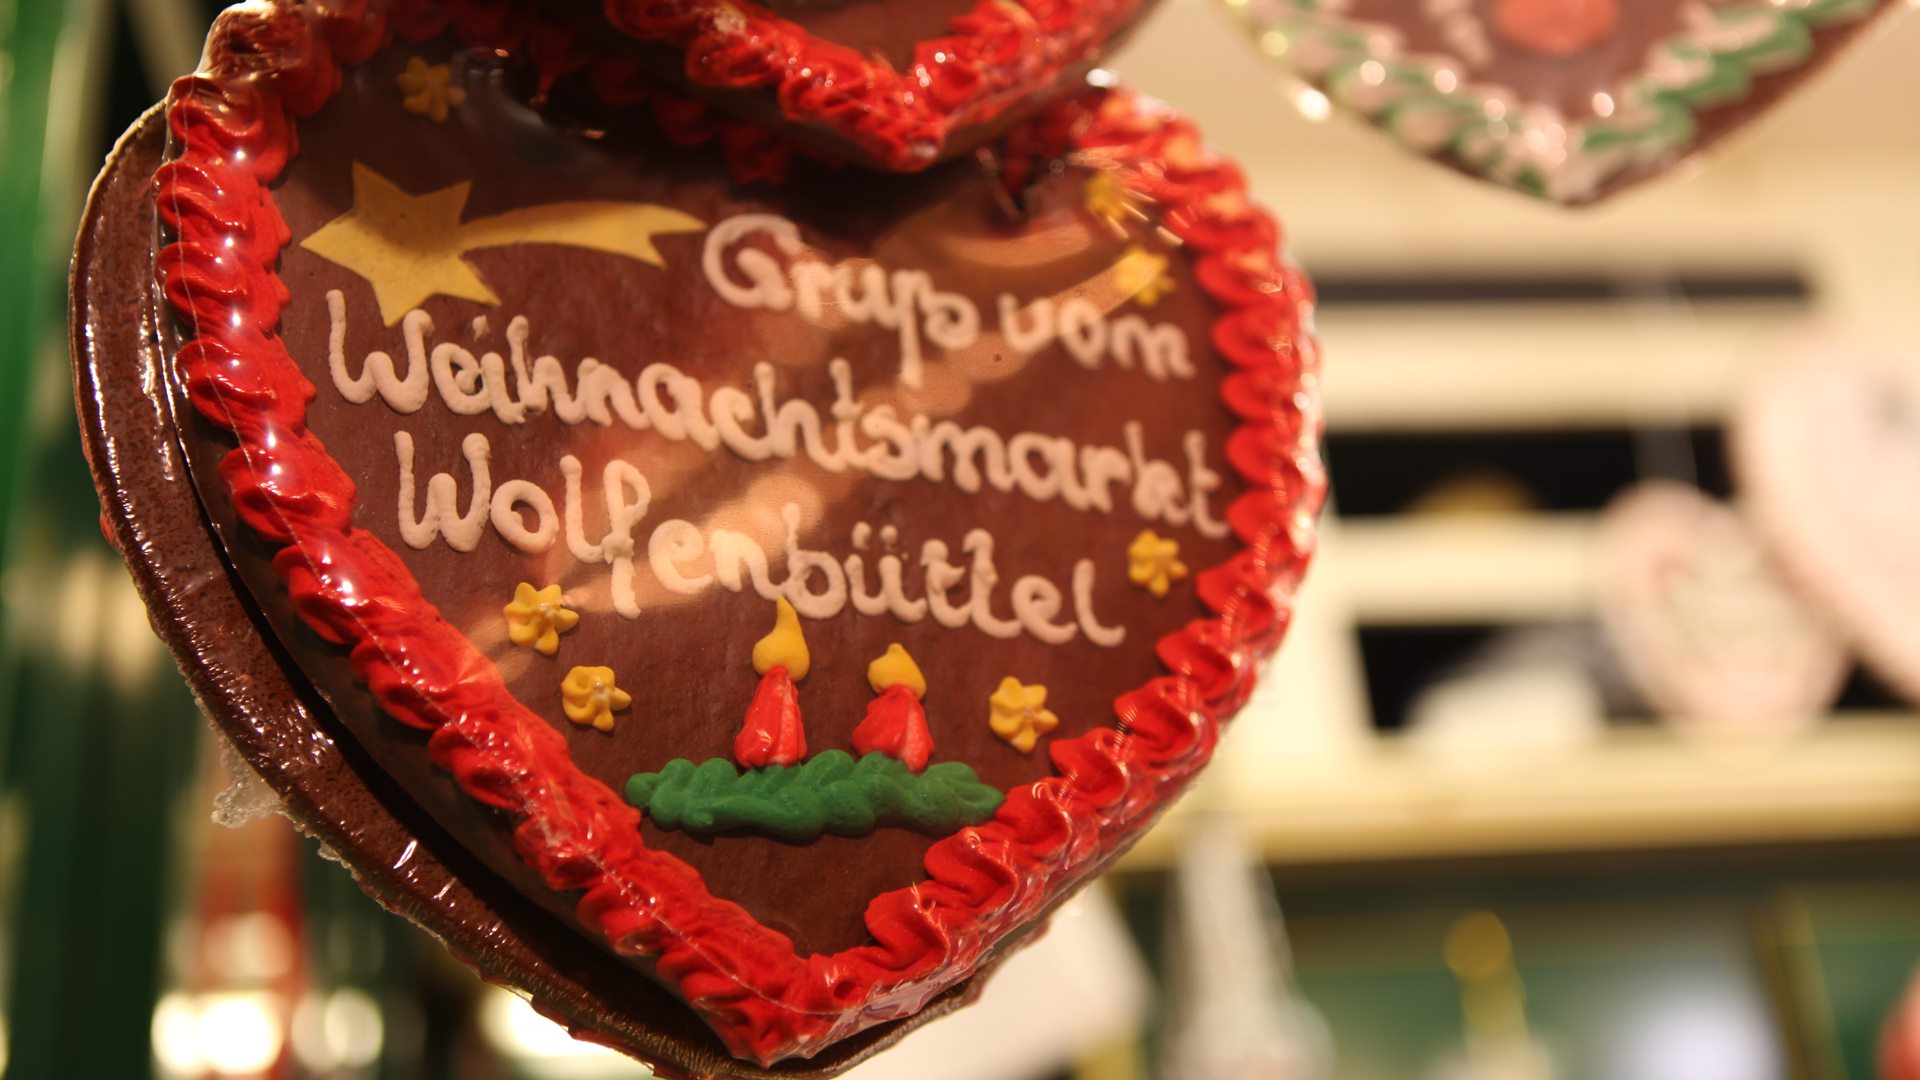 Auf einem Lebkuchenherz steht "Grüße vom Weihnachtsmarkt Wolfenbüttel"